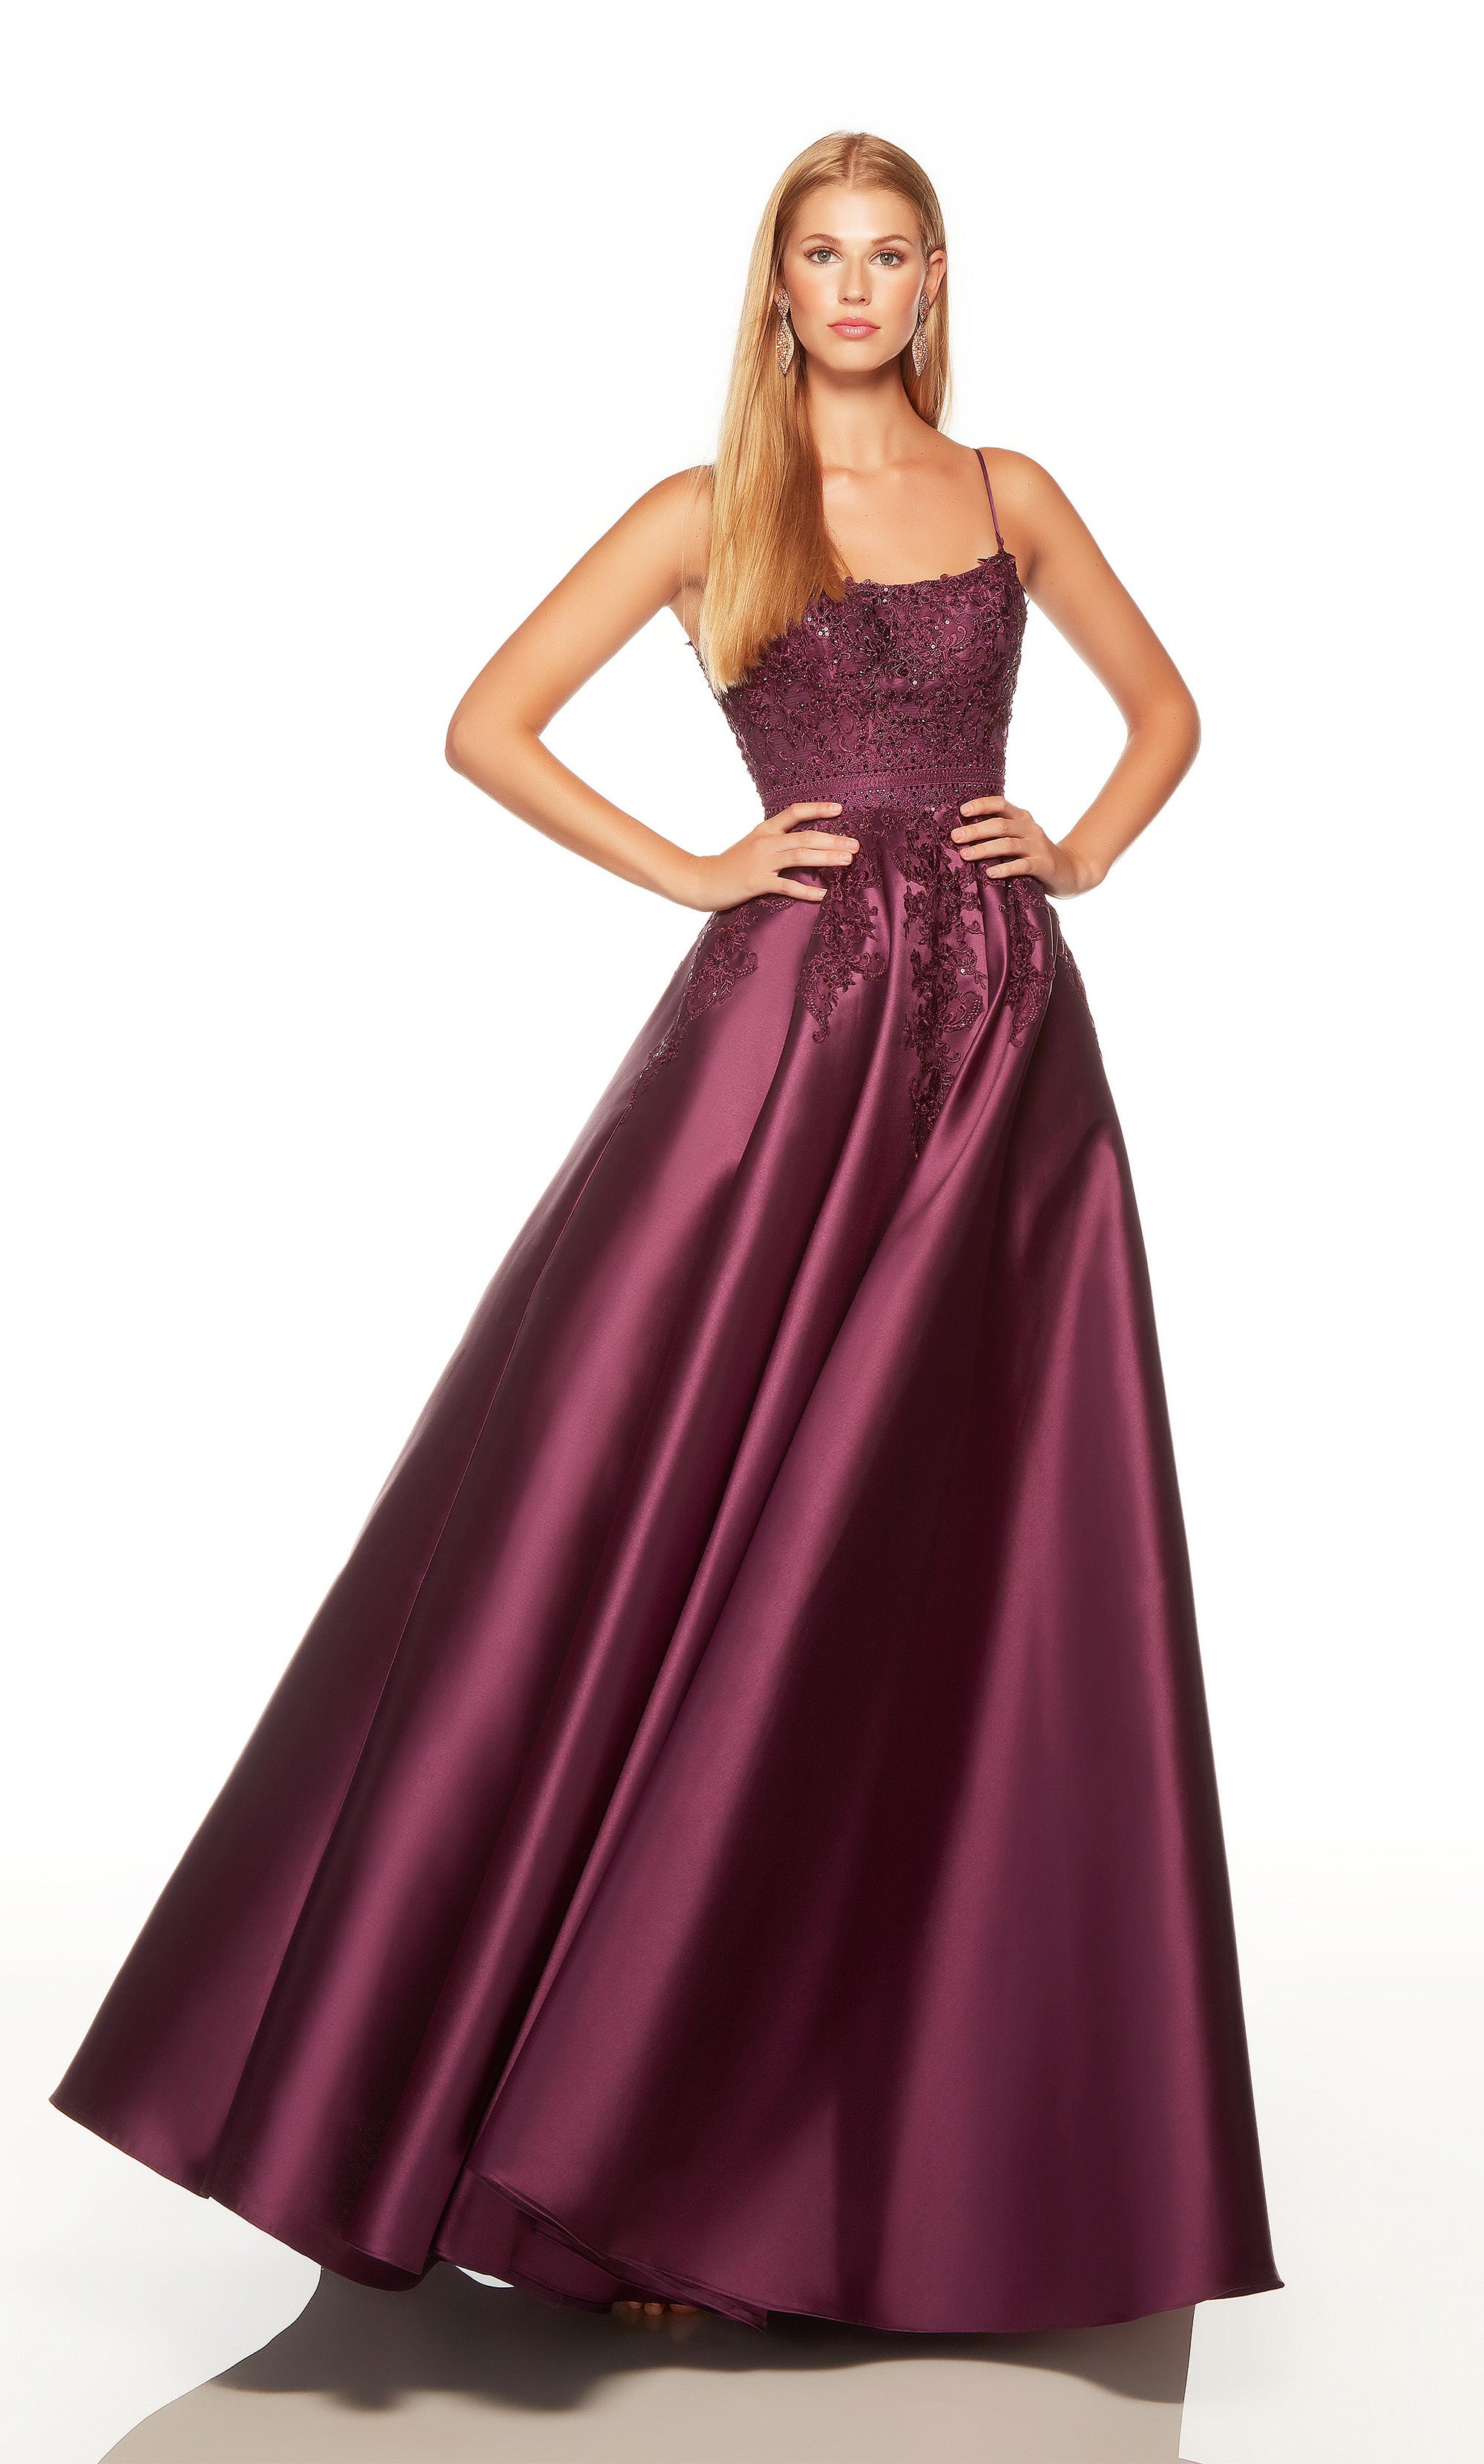 Purple Pleated Dress – The Elegance of Black